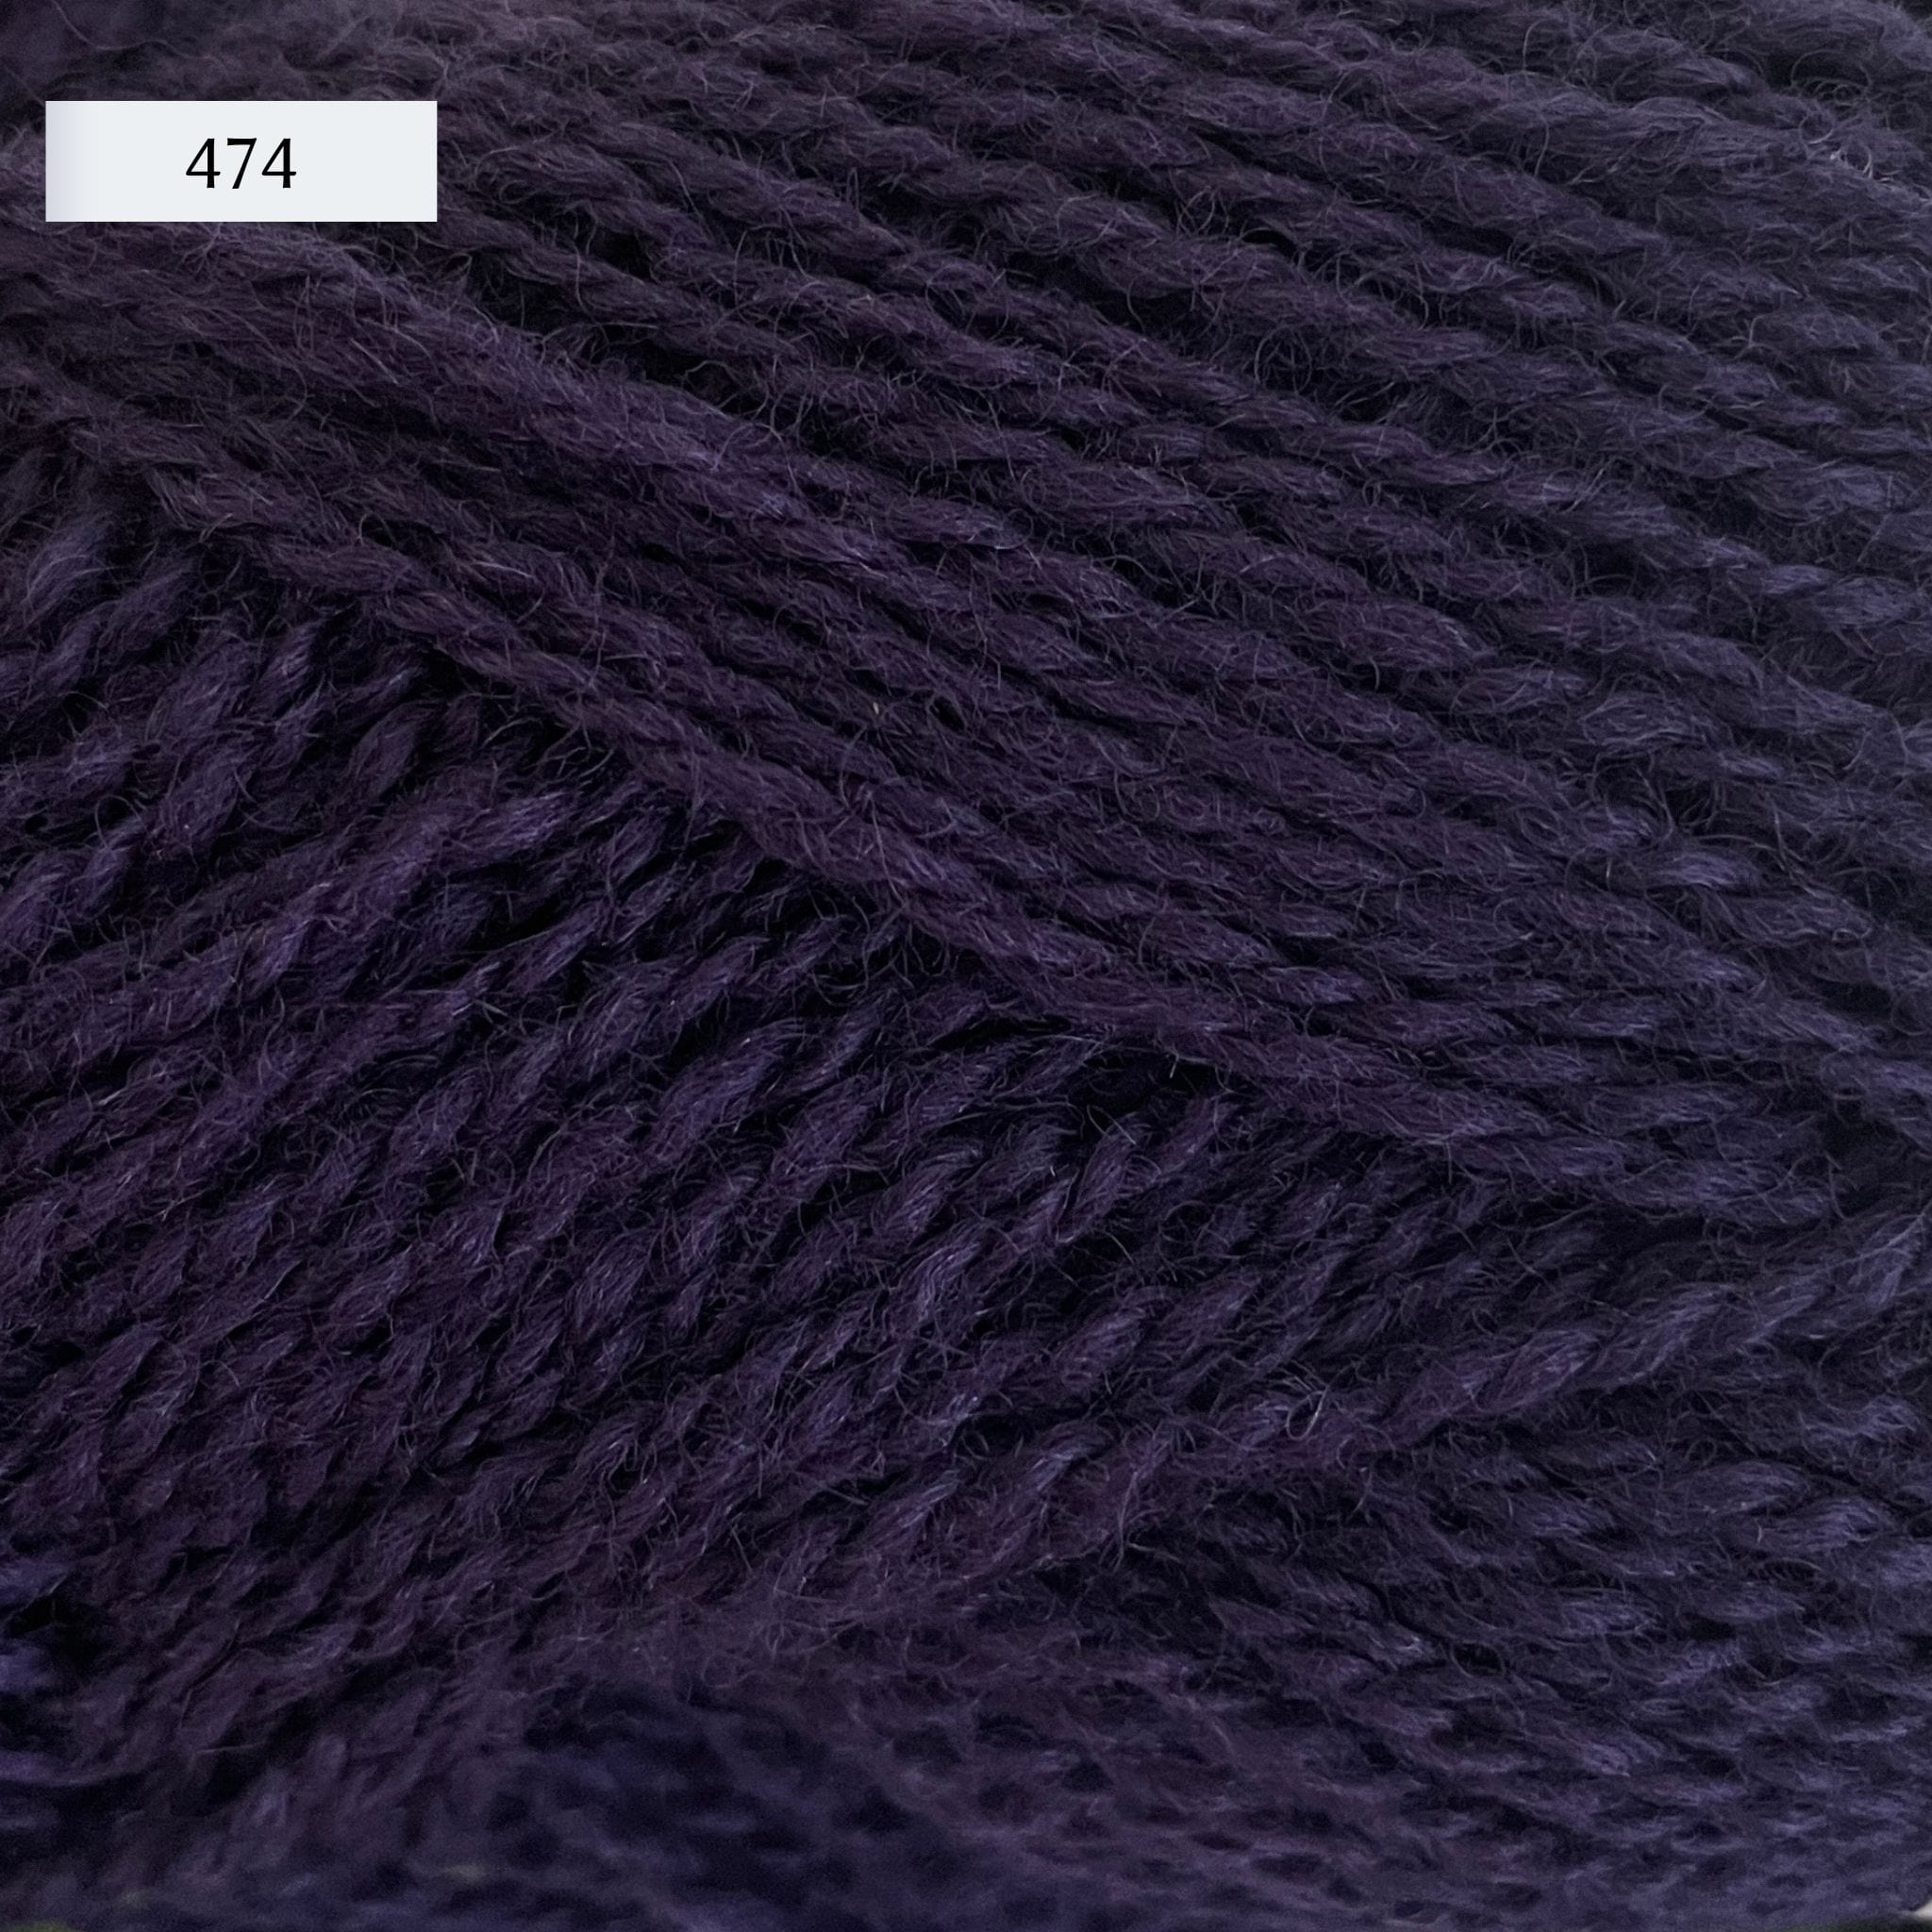 Rauma Finullgarn, a fingering/sport weight yarn, in color 474, a charcoal grey